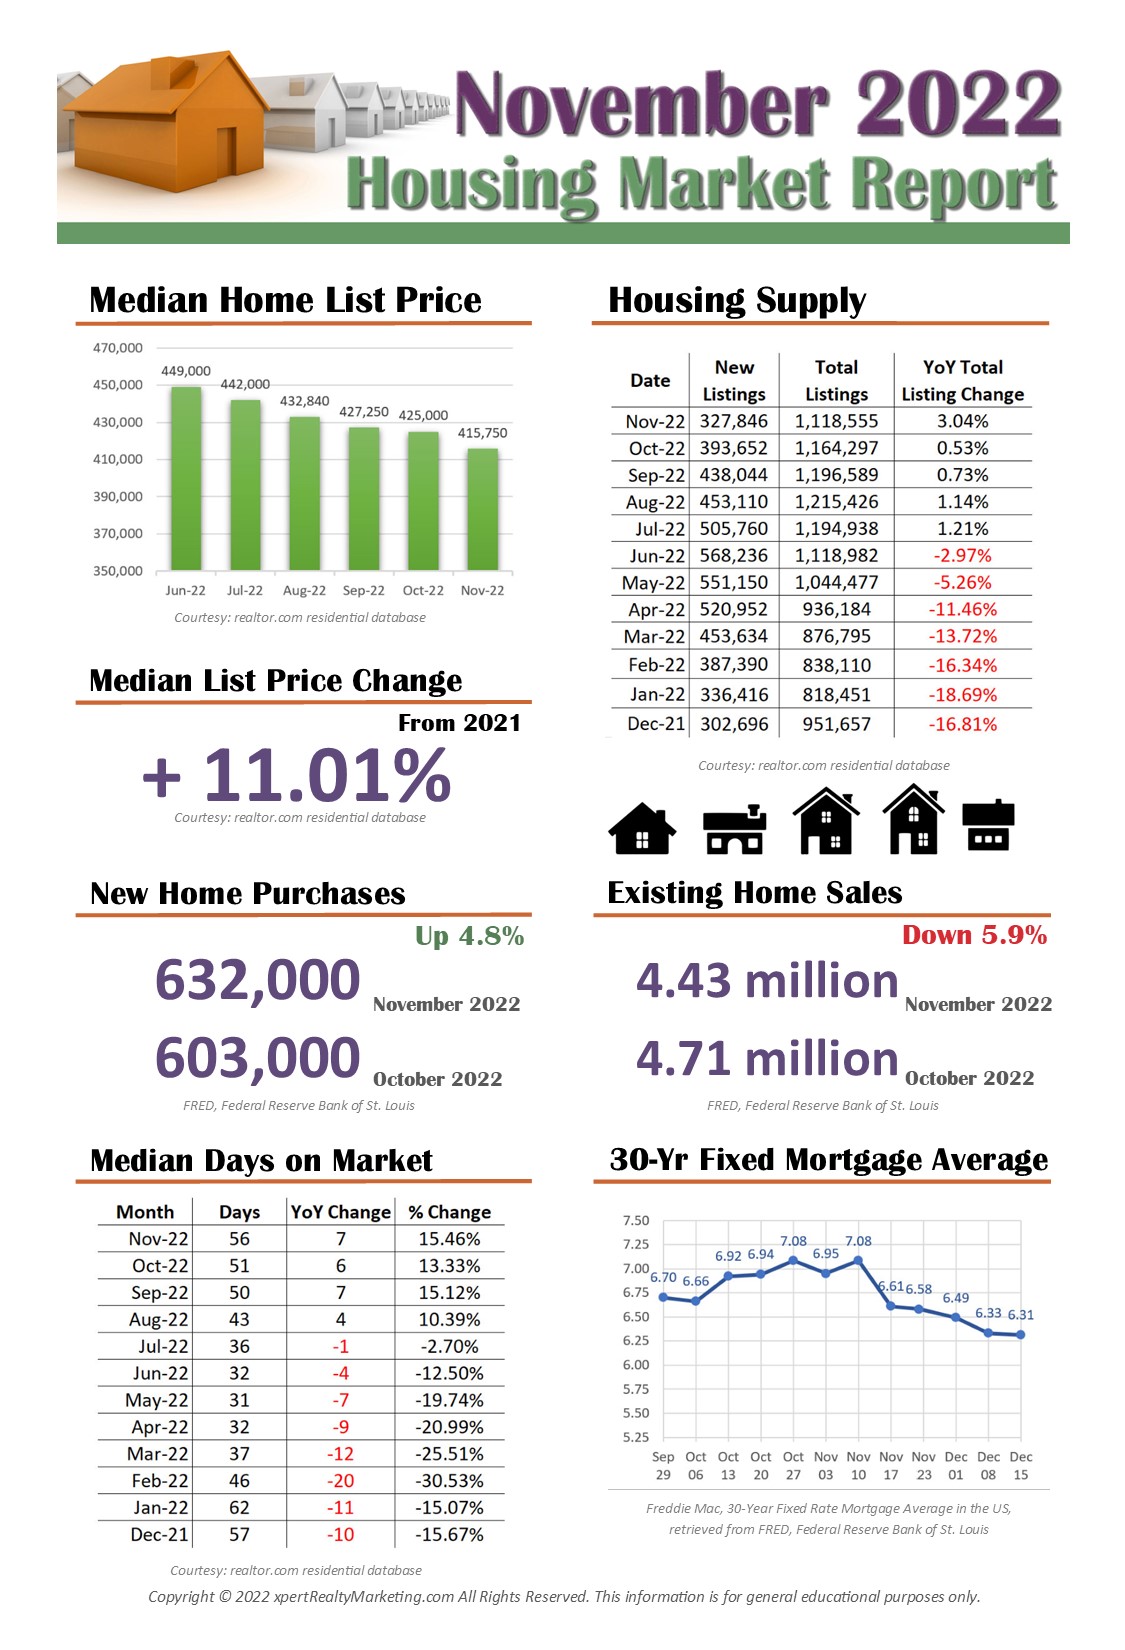 November 2022 Housing Market Infographic